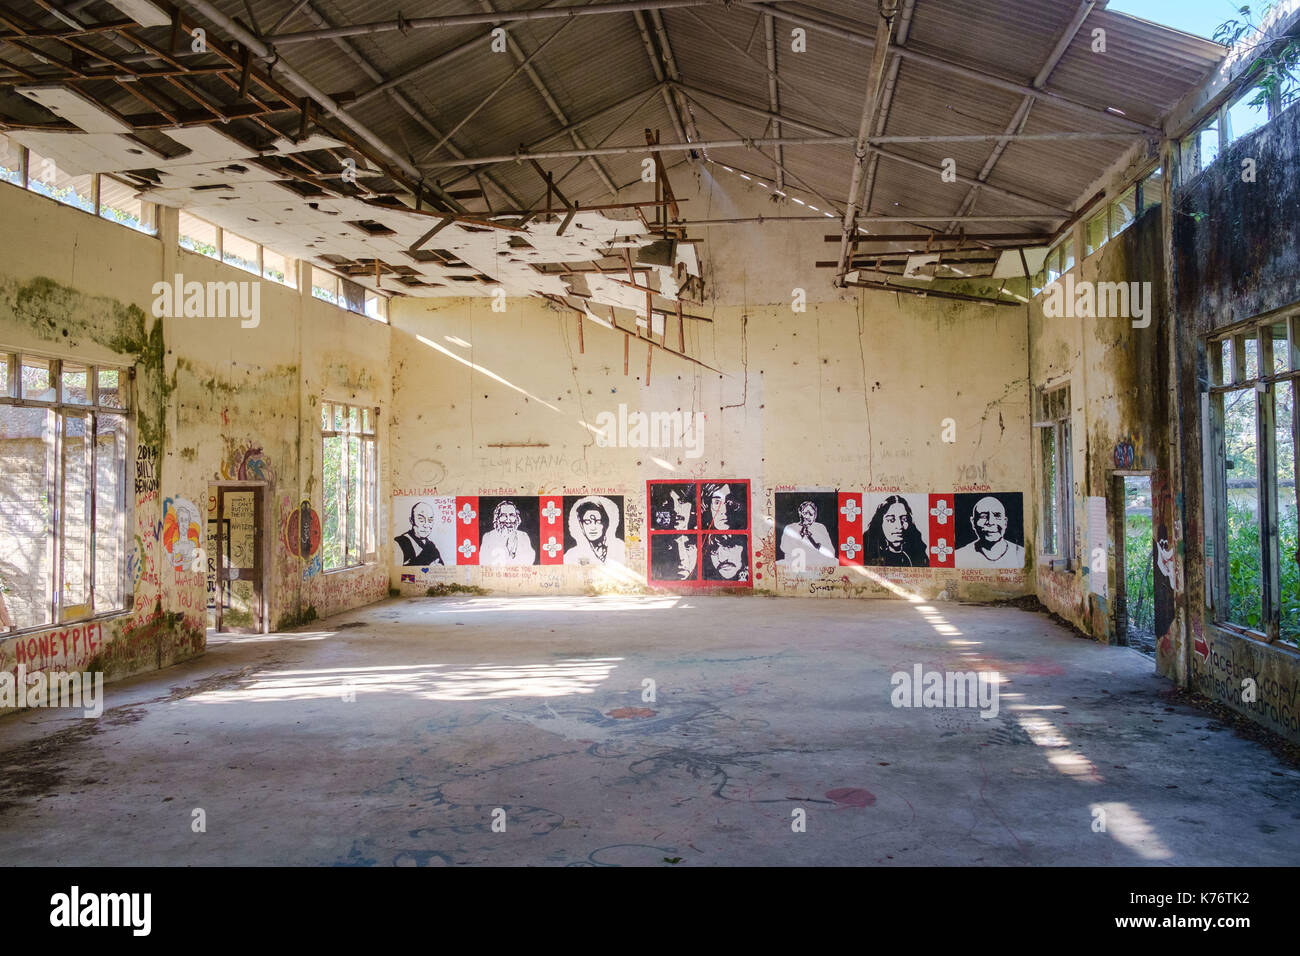 Rishikesh, India - March 10, 2015: Painting and grafitti othe wals of yoga hall at abandoned Maharishi Mahesh Yogi Ashram (Beatles Ashram). Stock Photo